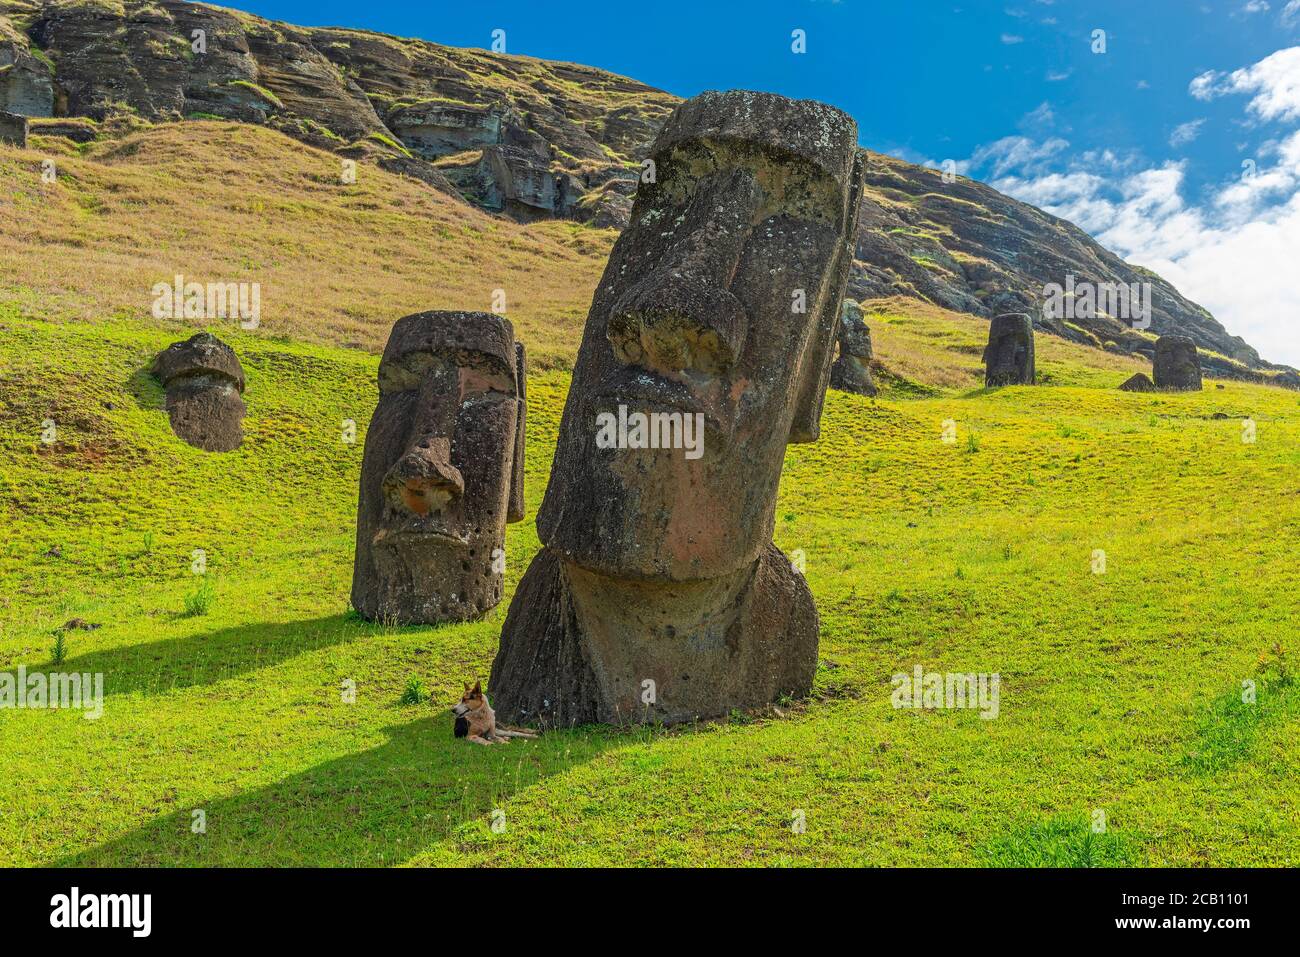 Cane all'ombra di un Moai, Rano Raraku, Isola di Pasqua (Rapa Nui), Cile. Foto Stock